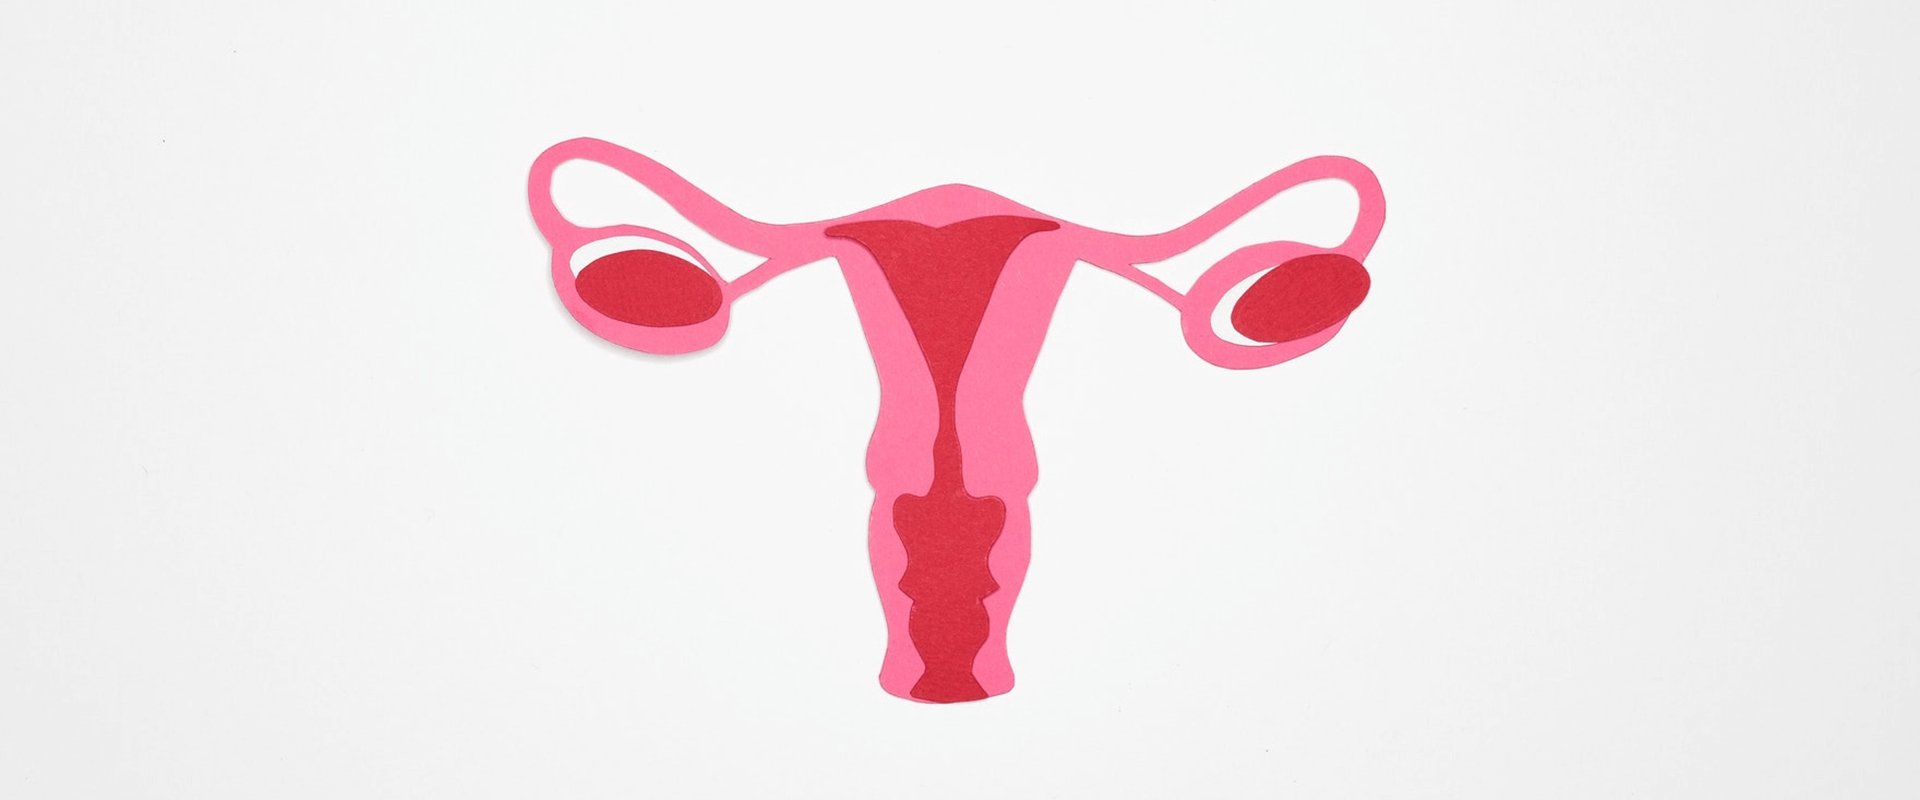 Malformações uterinas: como ocorrem?